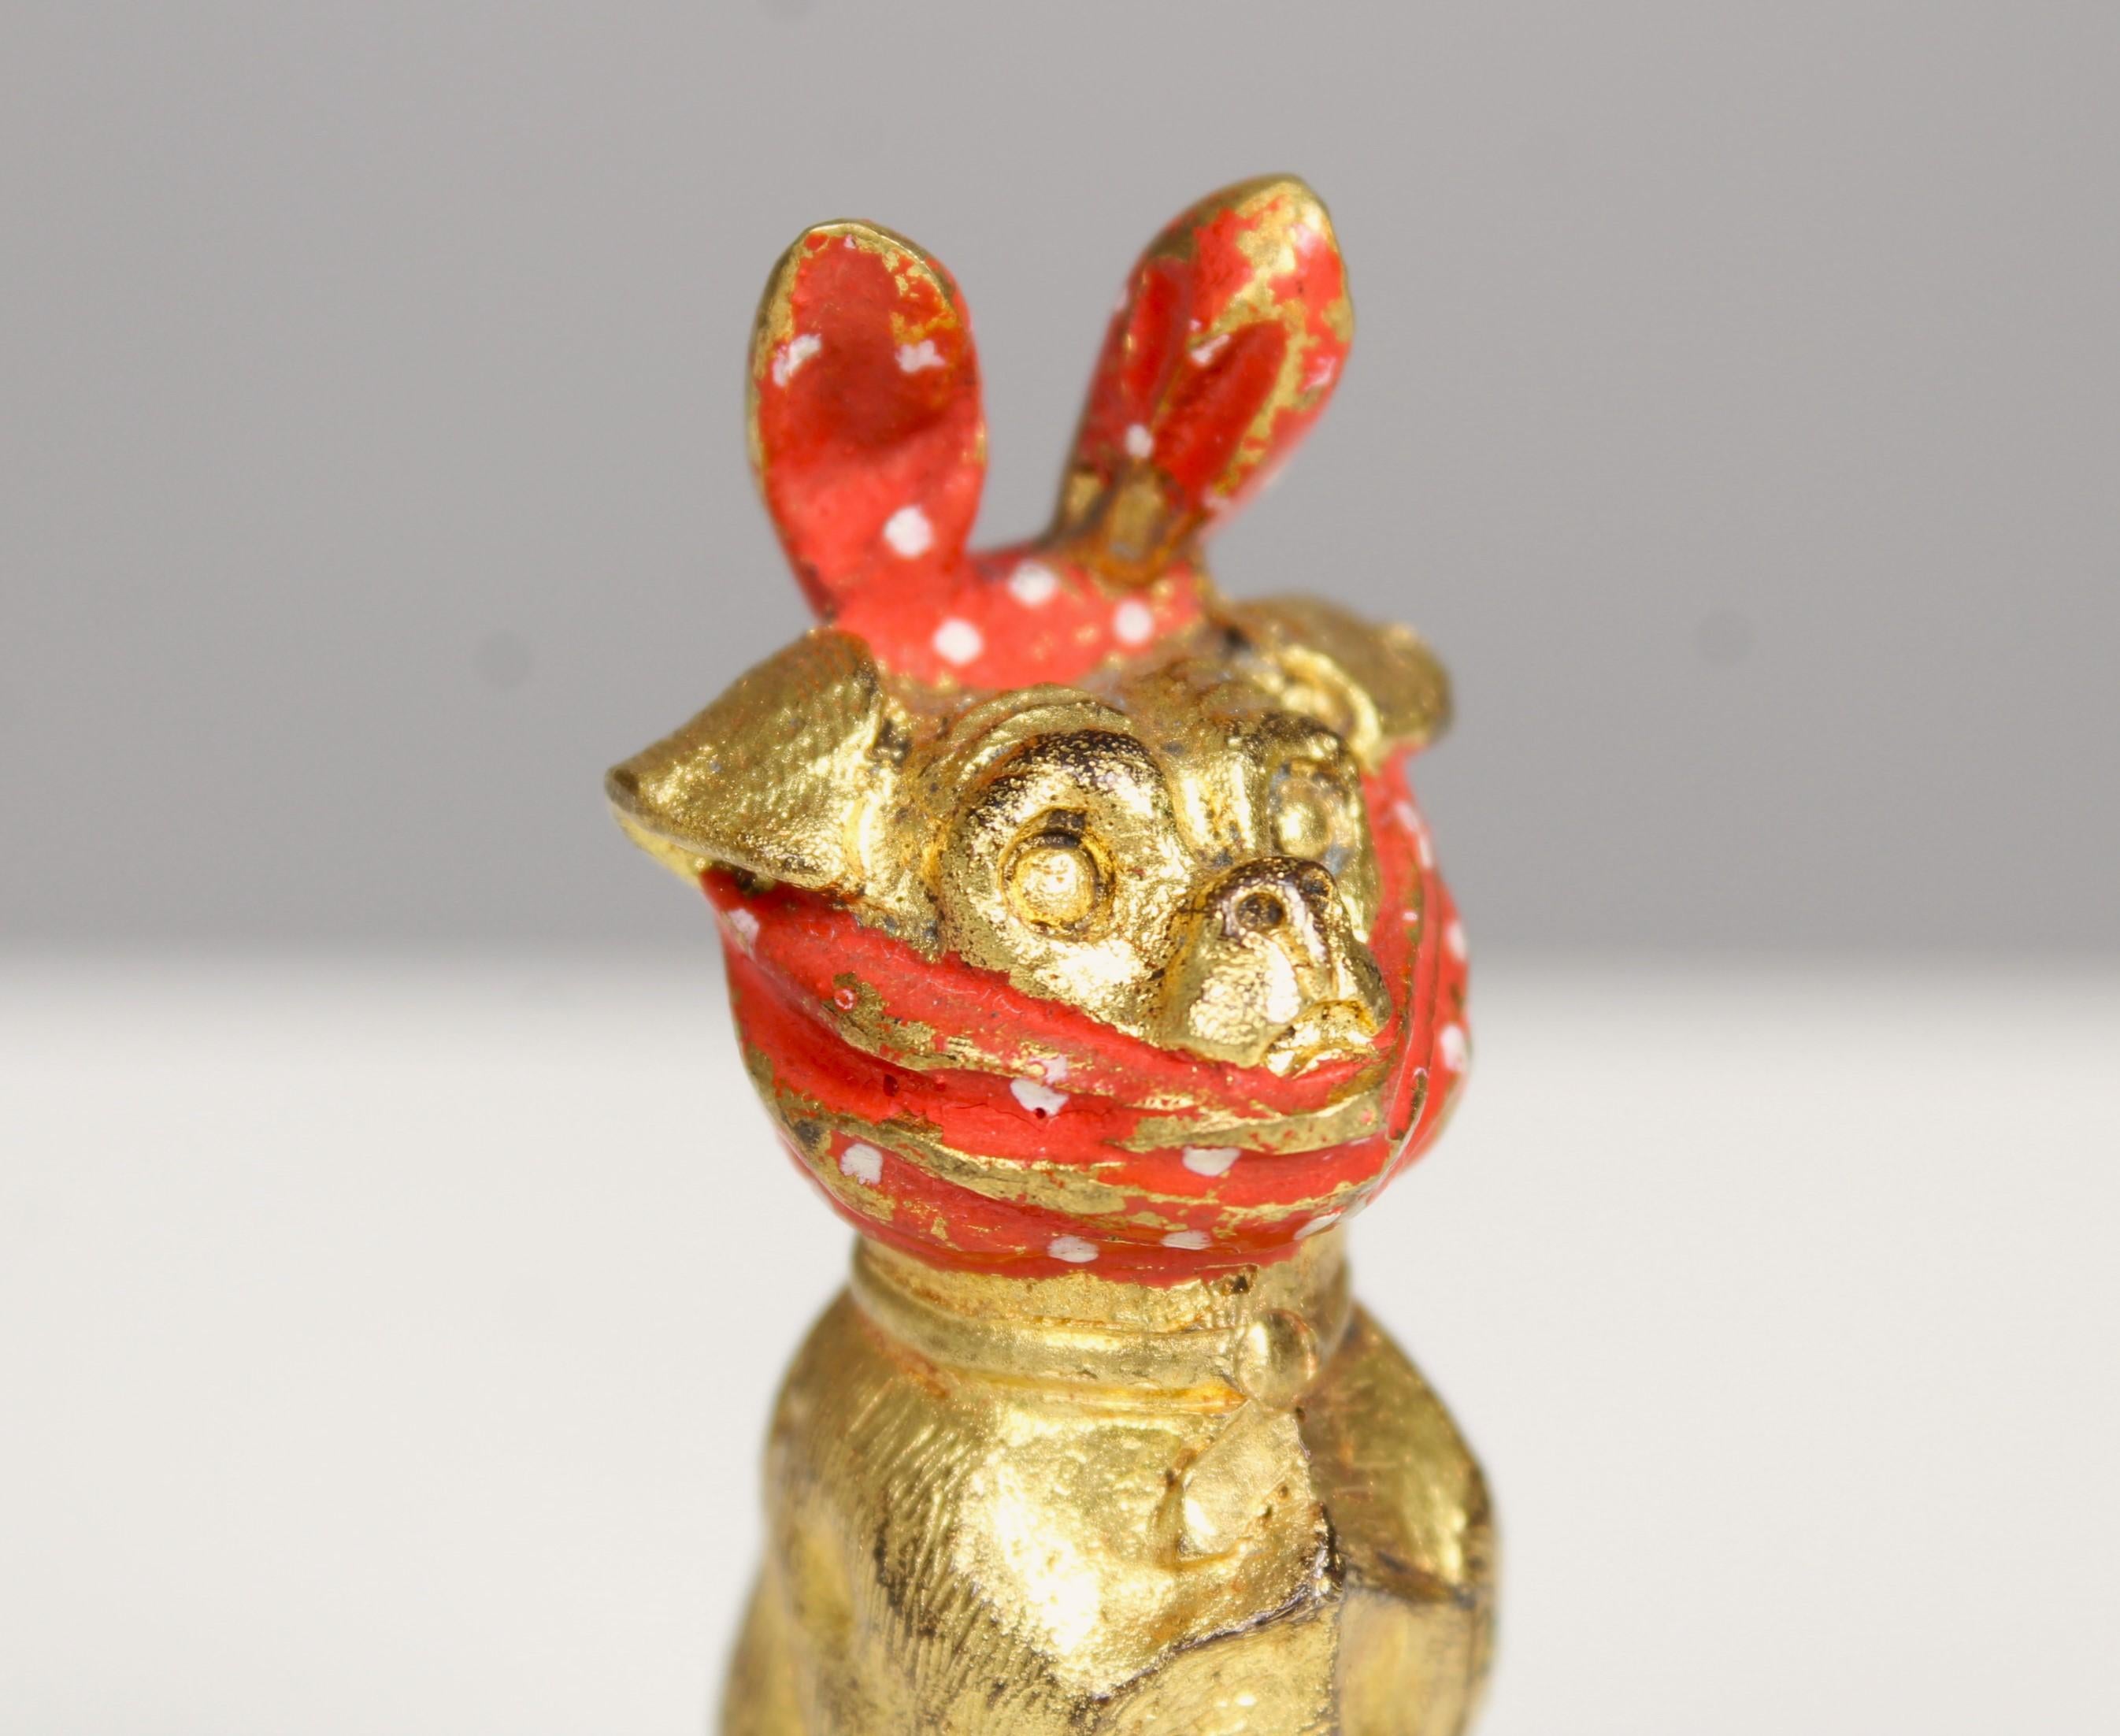 Schöne kleine Bronze, die einen Mops mit einem roten Halstuch um den Kopf abbildet.
Vielleicht Wiener Bronze?
Fein ziseliert, vergoldet und handbemalt.




